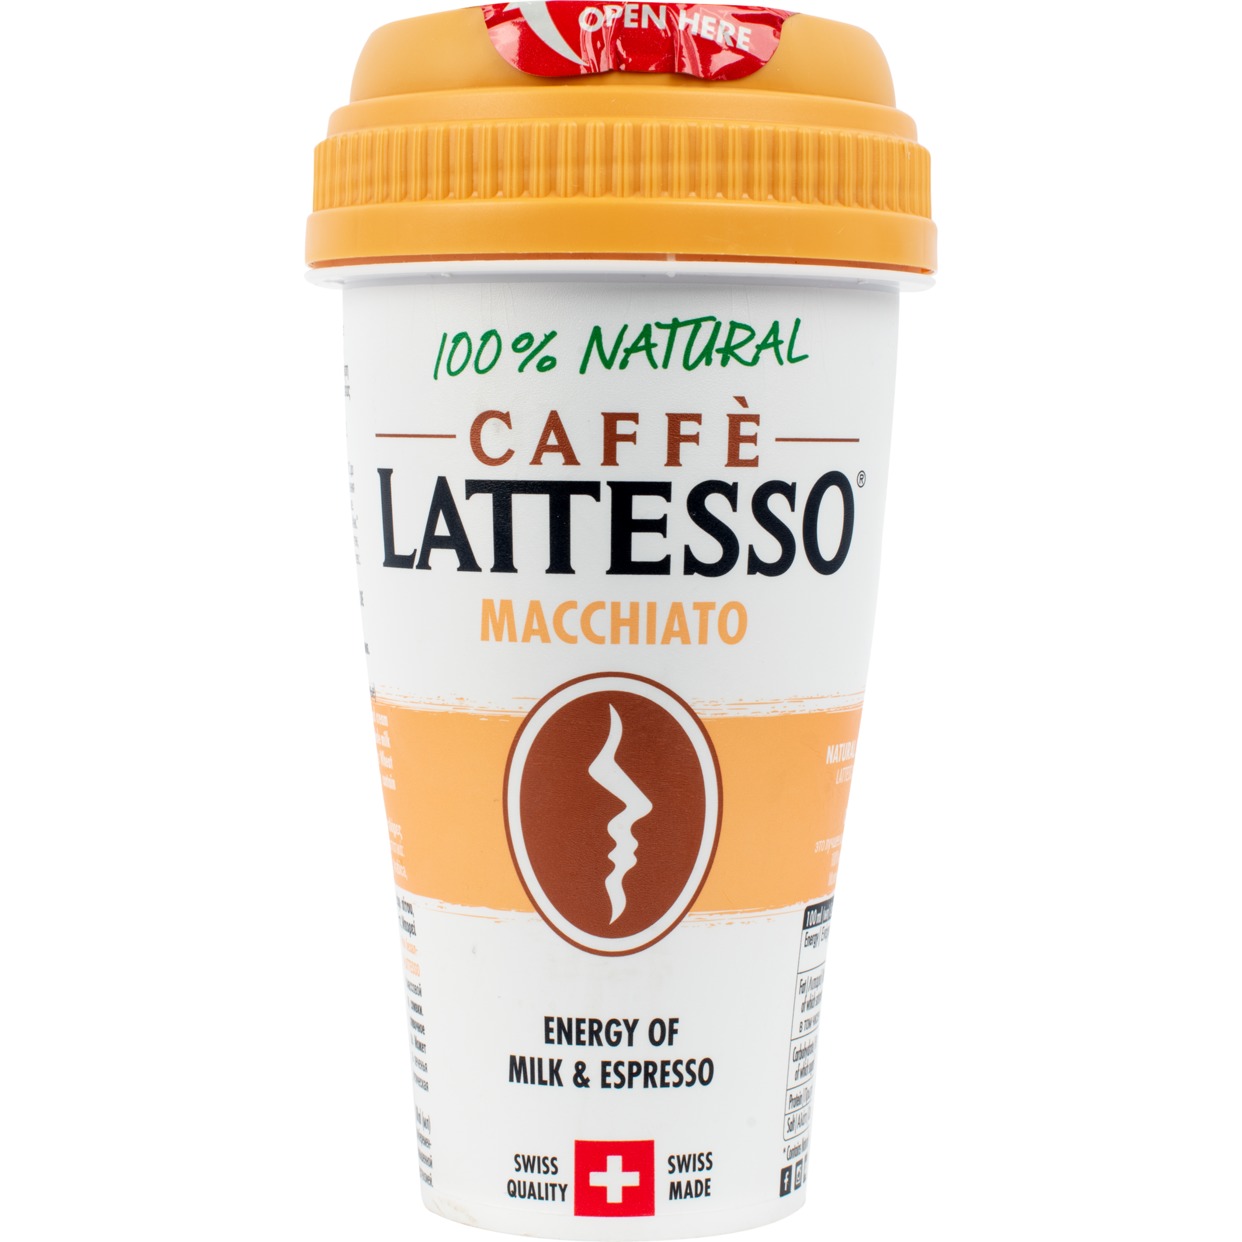 Напиток Lattesso Macchiato молочный с печеньем 3.9% 250мл по акции в Пятерочке